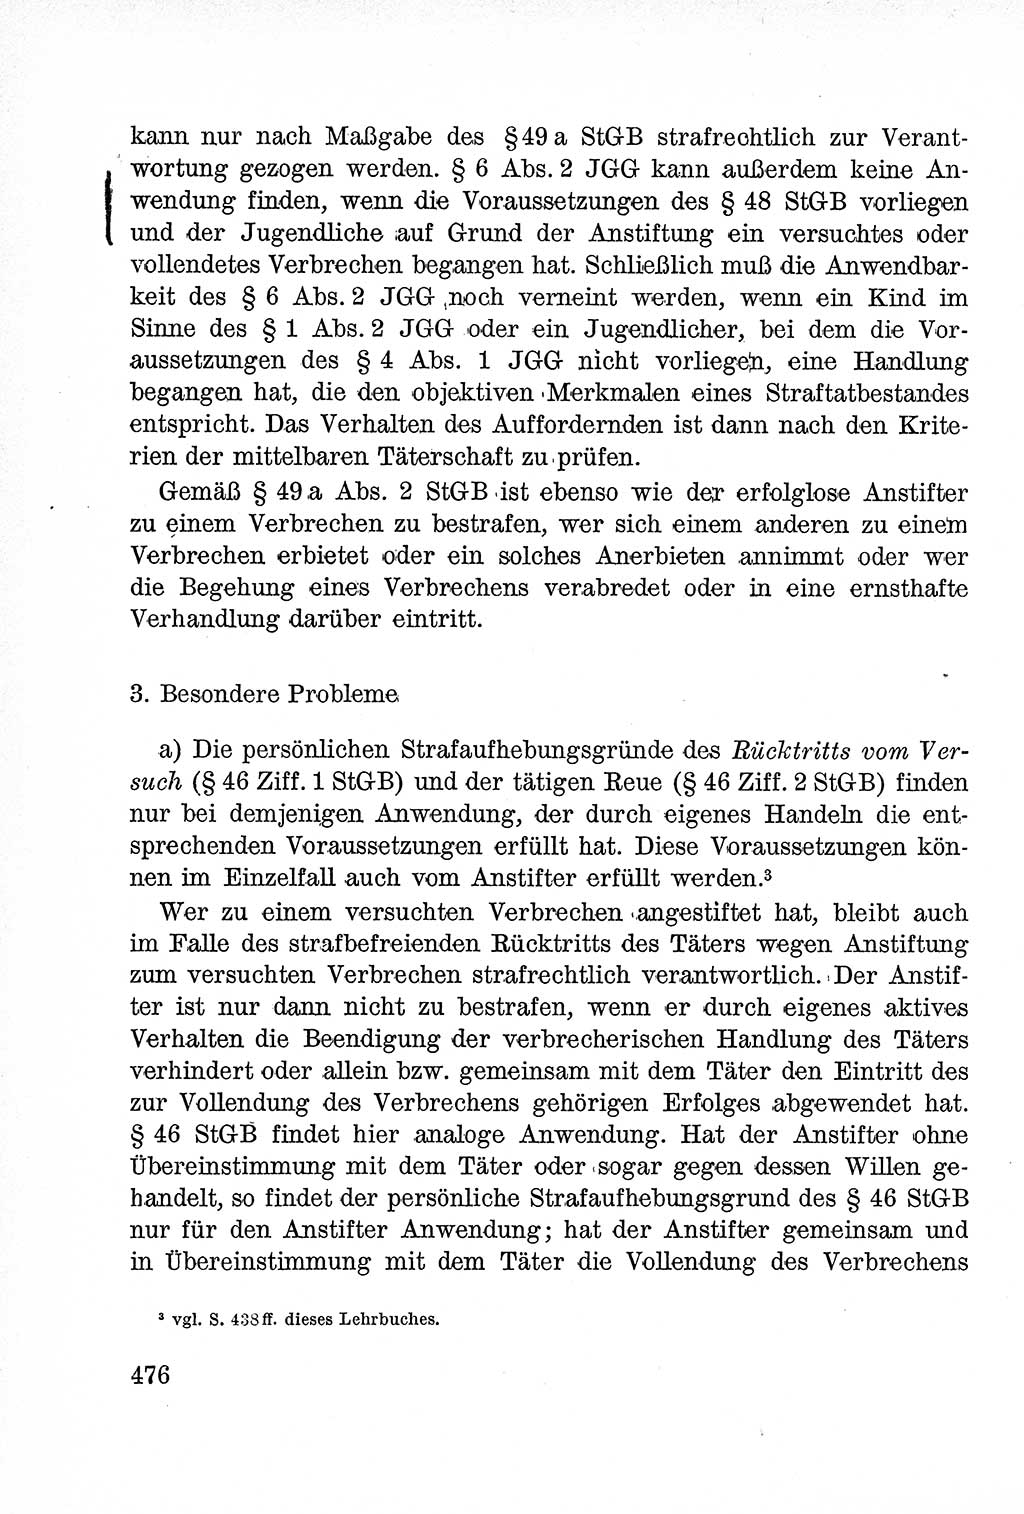 Lehrbuch des Strafrechts der Deutschen Demokratischen Republik (DDR), Allgemeiner Teil 1957, Seite 476 (Lb. Strafr. DDR AT 1957, S. 476)